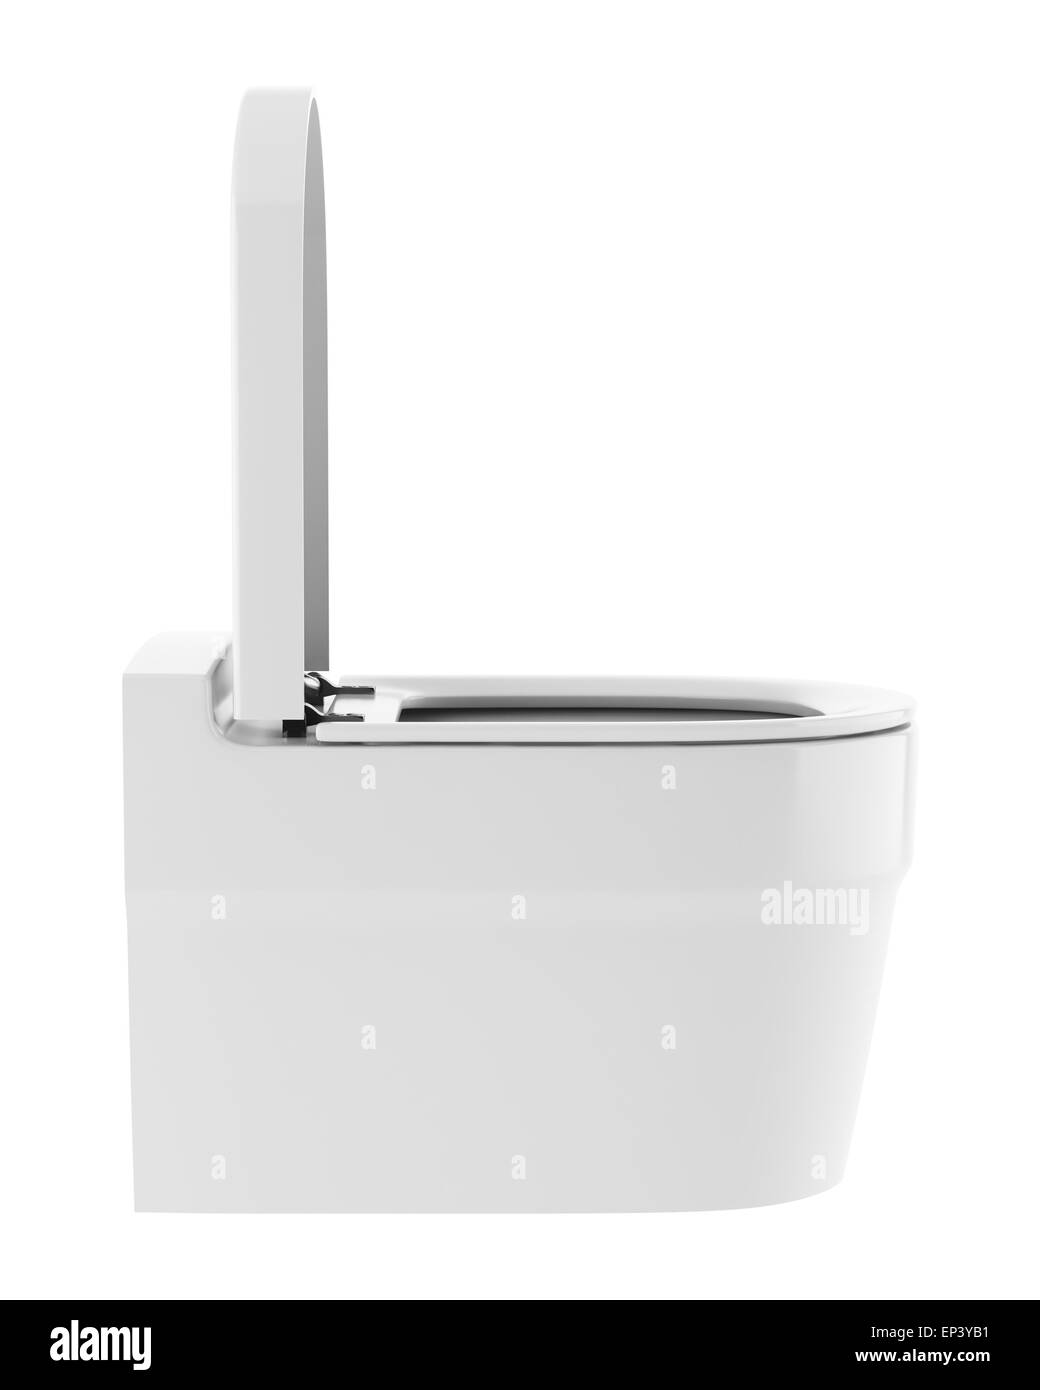 single modern toilet bowl isolated on white Stock Photo